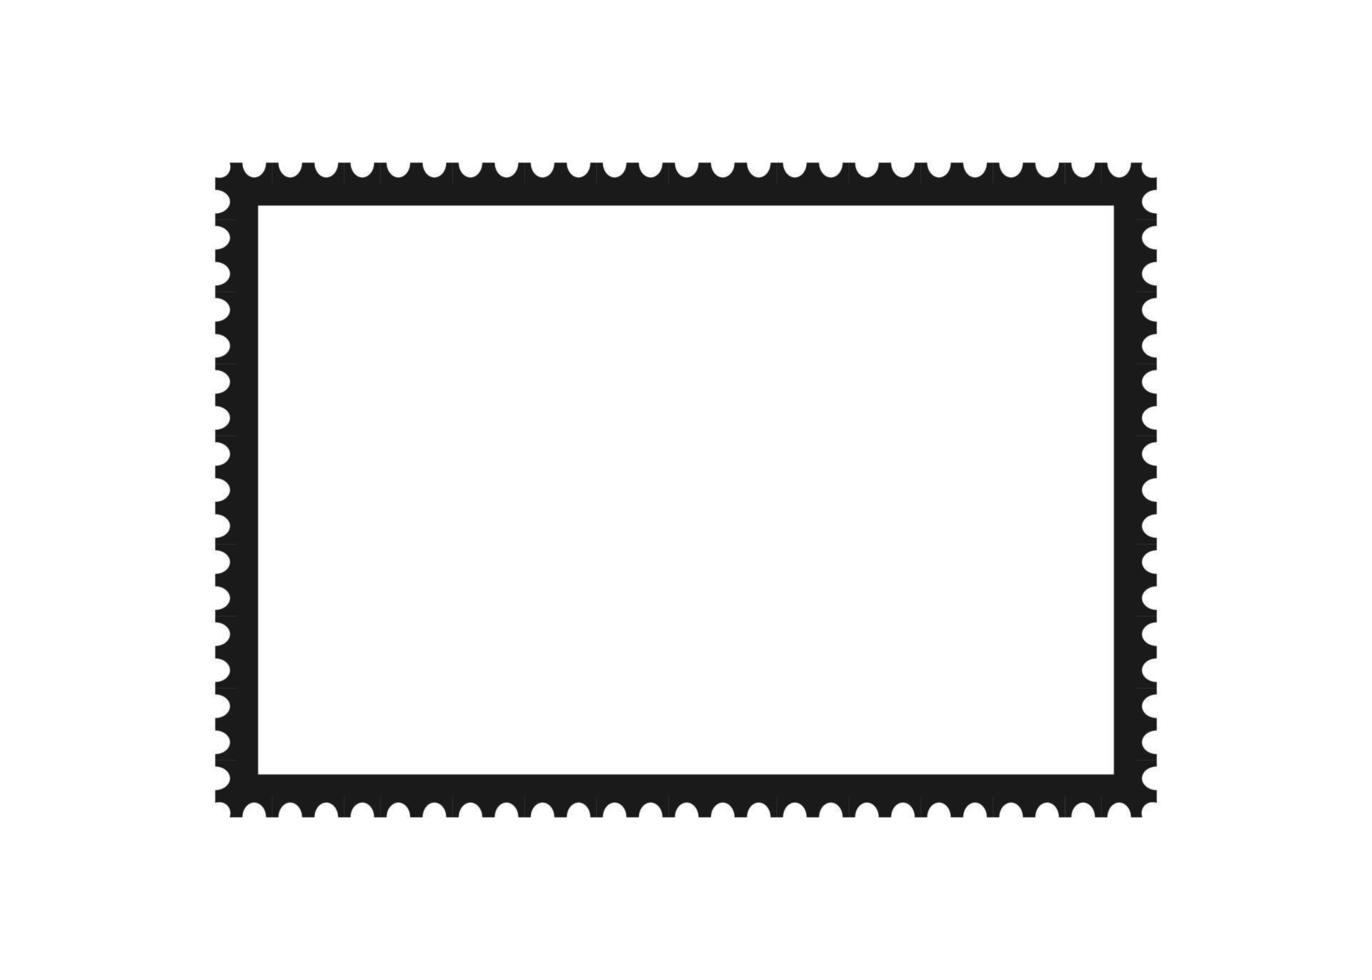 moldura de selo postal. modelo de borda vazia para cartões postais e cartas. retângulo em branco e selo quadrado com borda perfurada. ilustração vetorial isolada no fundo branco vetor